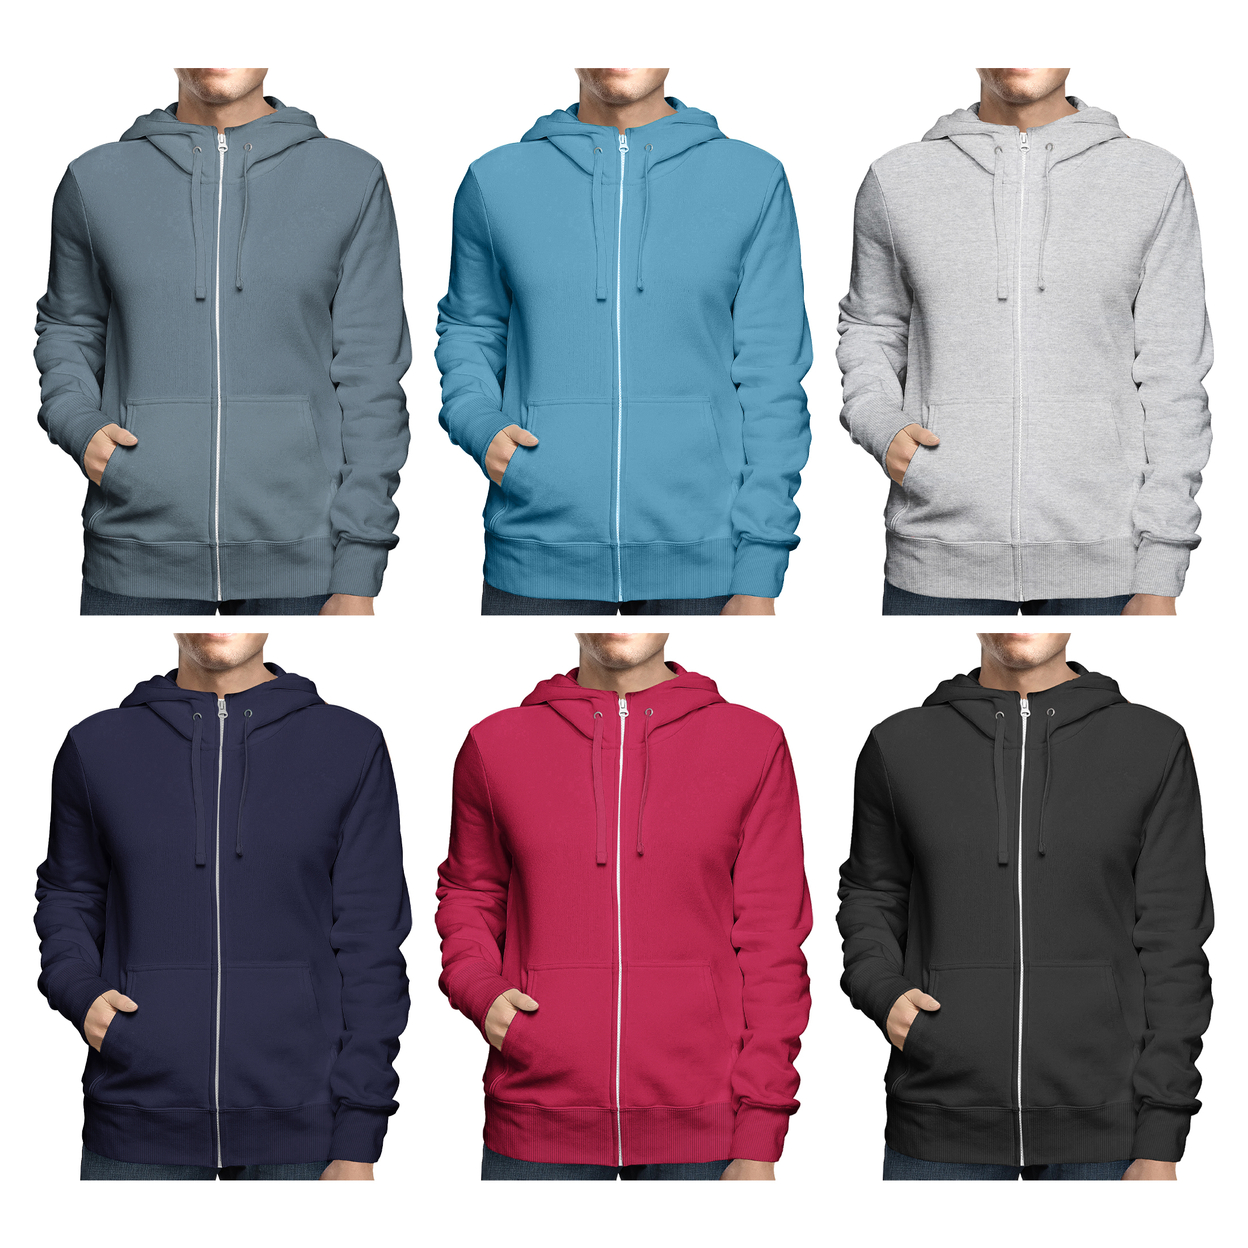 Men's Winter Warm Cozy Full Zip-Up Fleece Lined Soft Hoodie Sweatshirt - Navy, Small